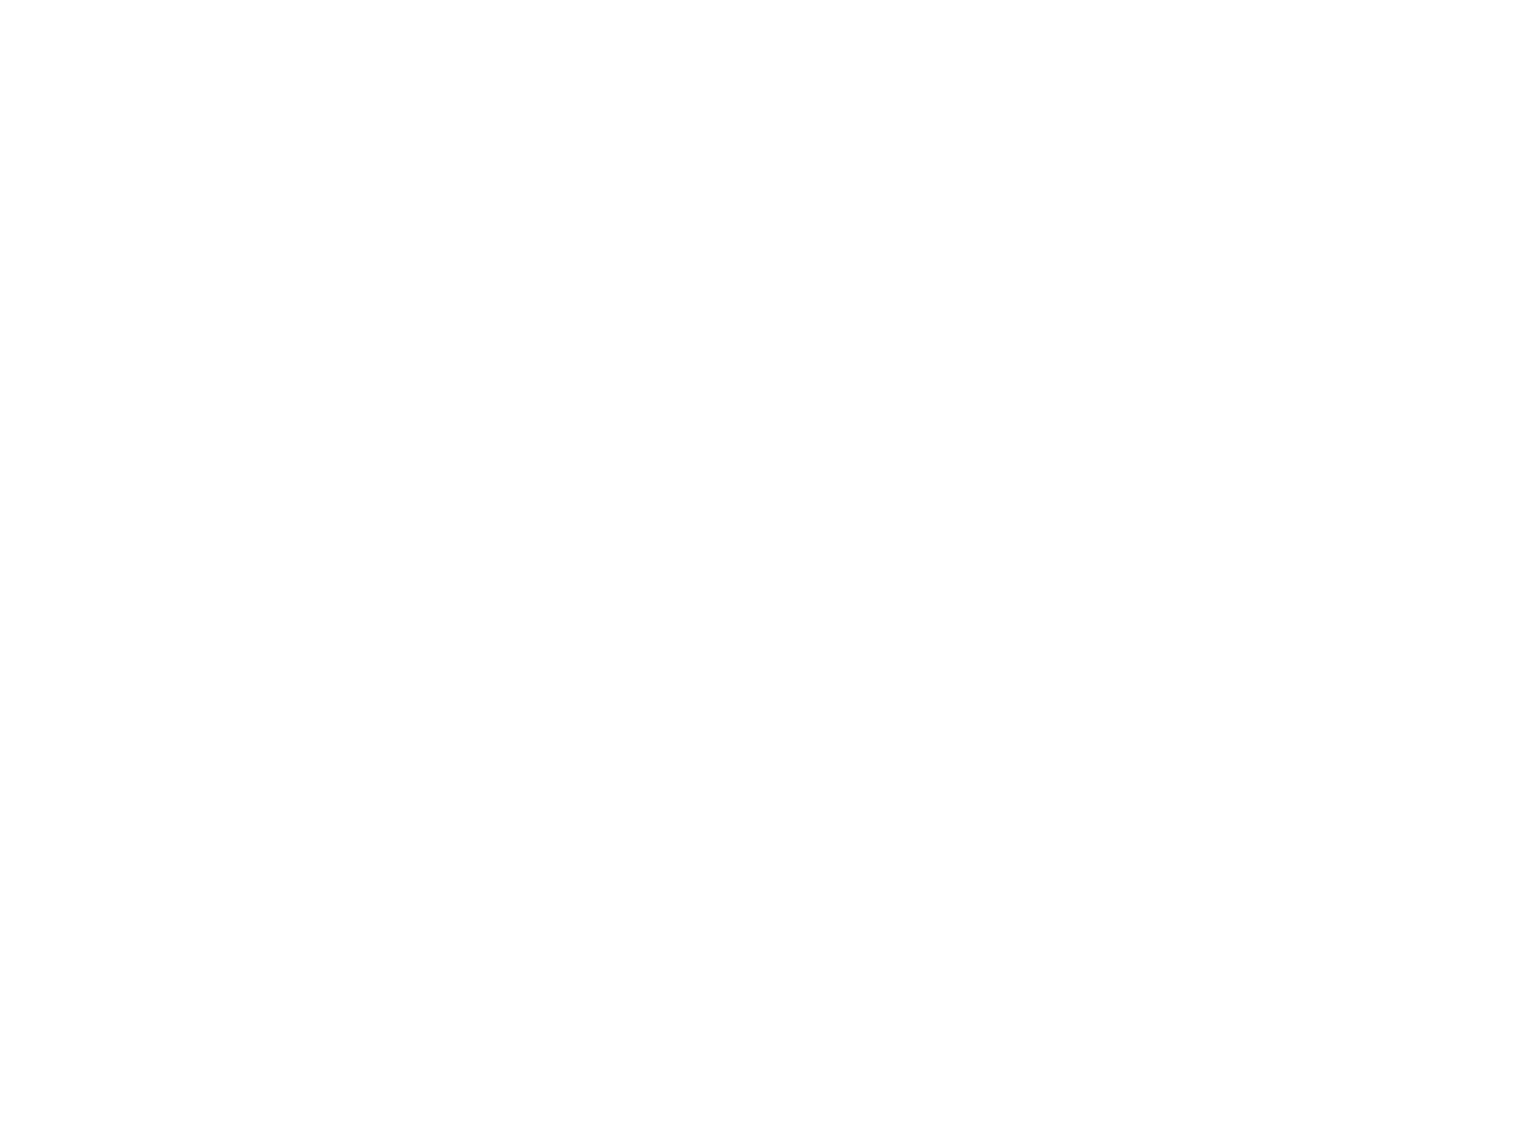 Genting Berhad logo large for dark backgrounds (transparent PNG)